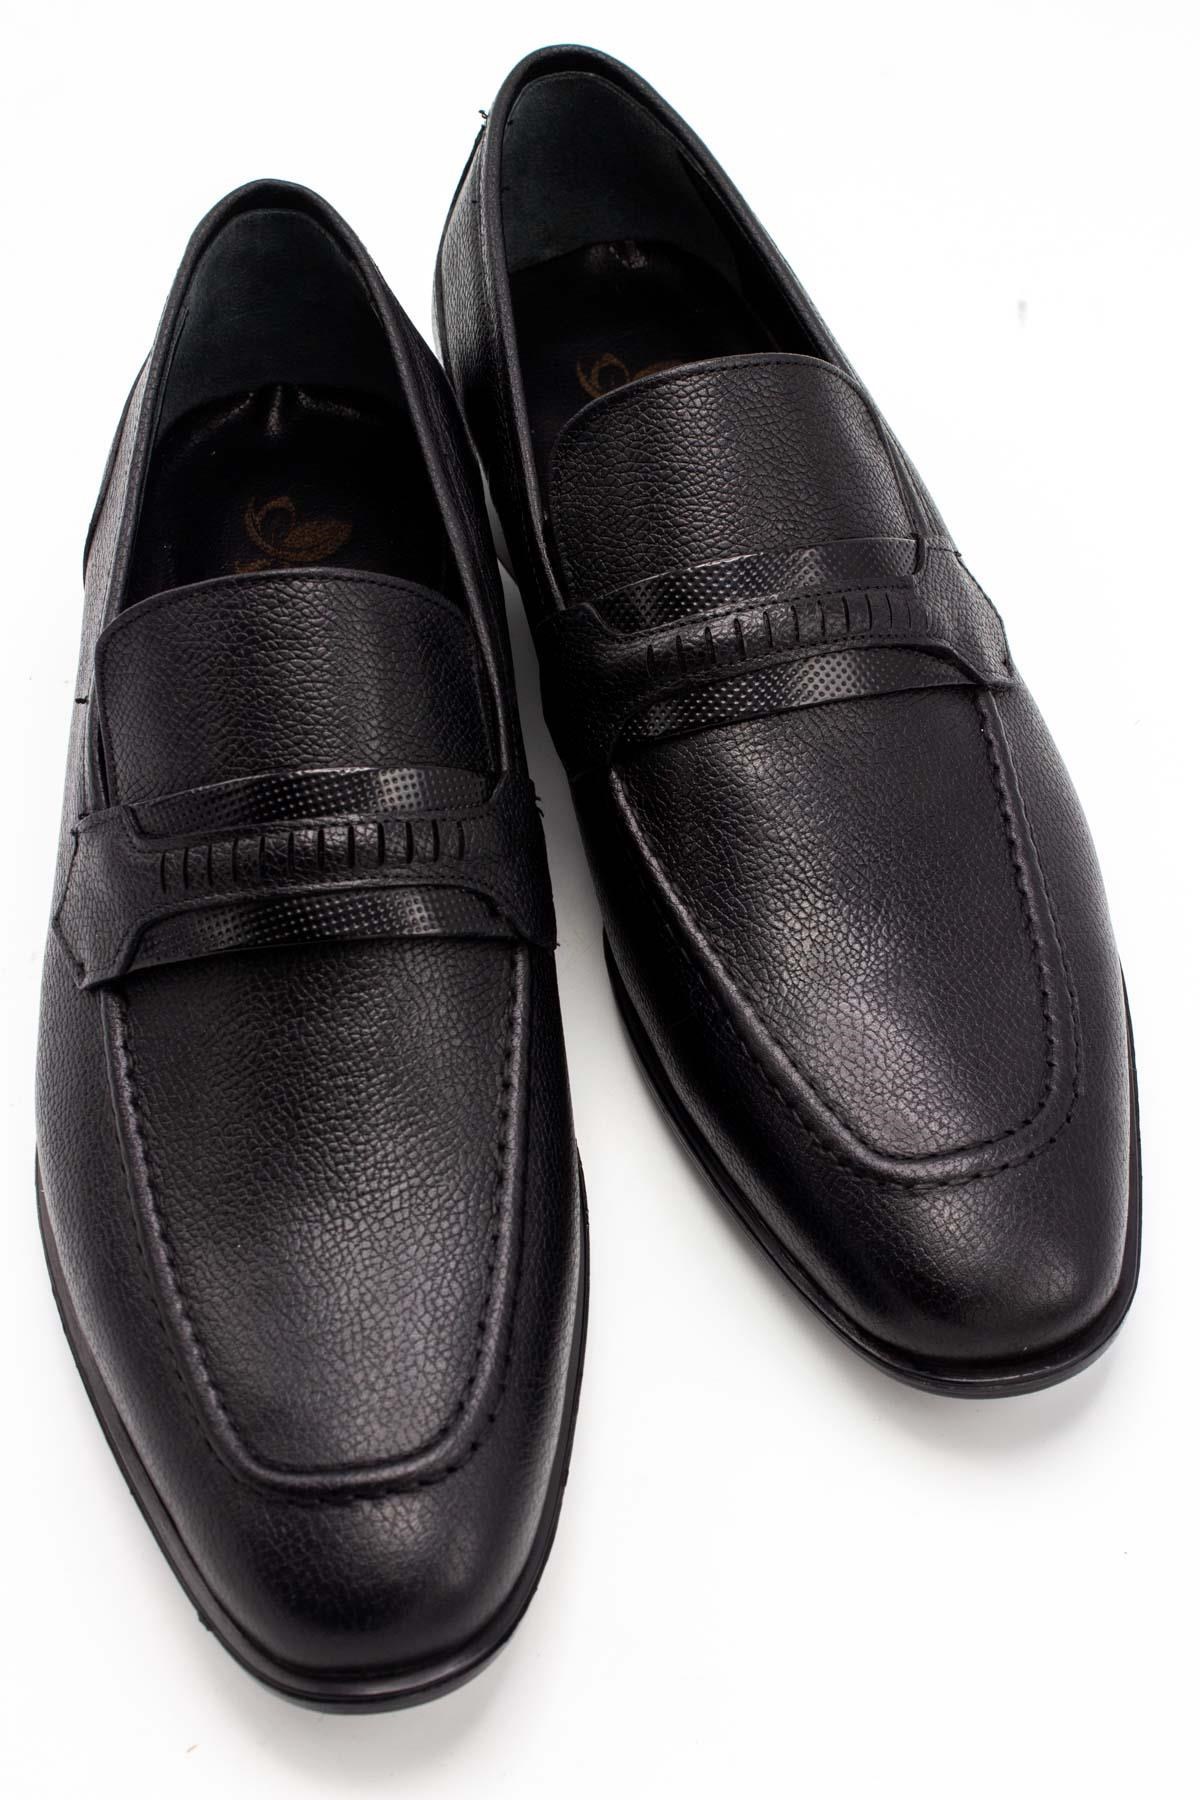 Sermoda %100 Hakiki Deri Bağcıksız Model Fantazi Erkek Ayakkabı Siyah